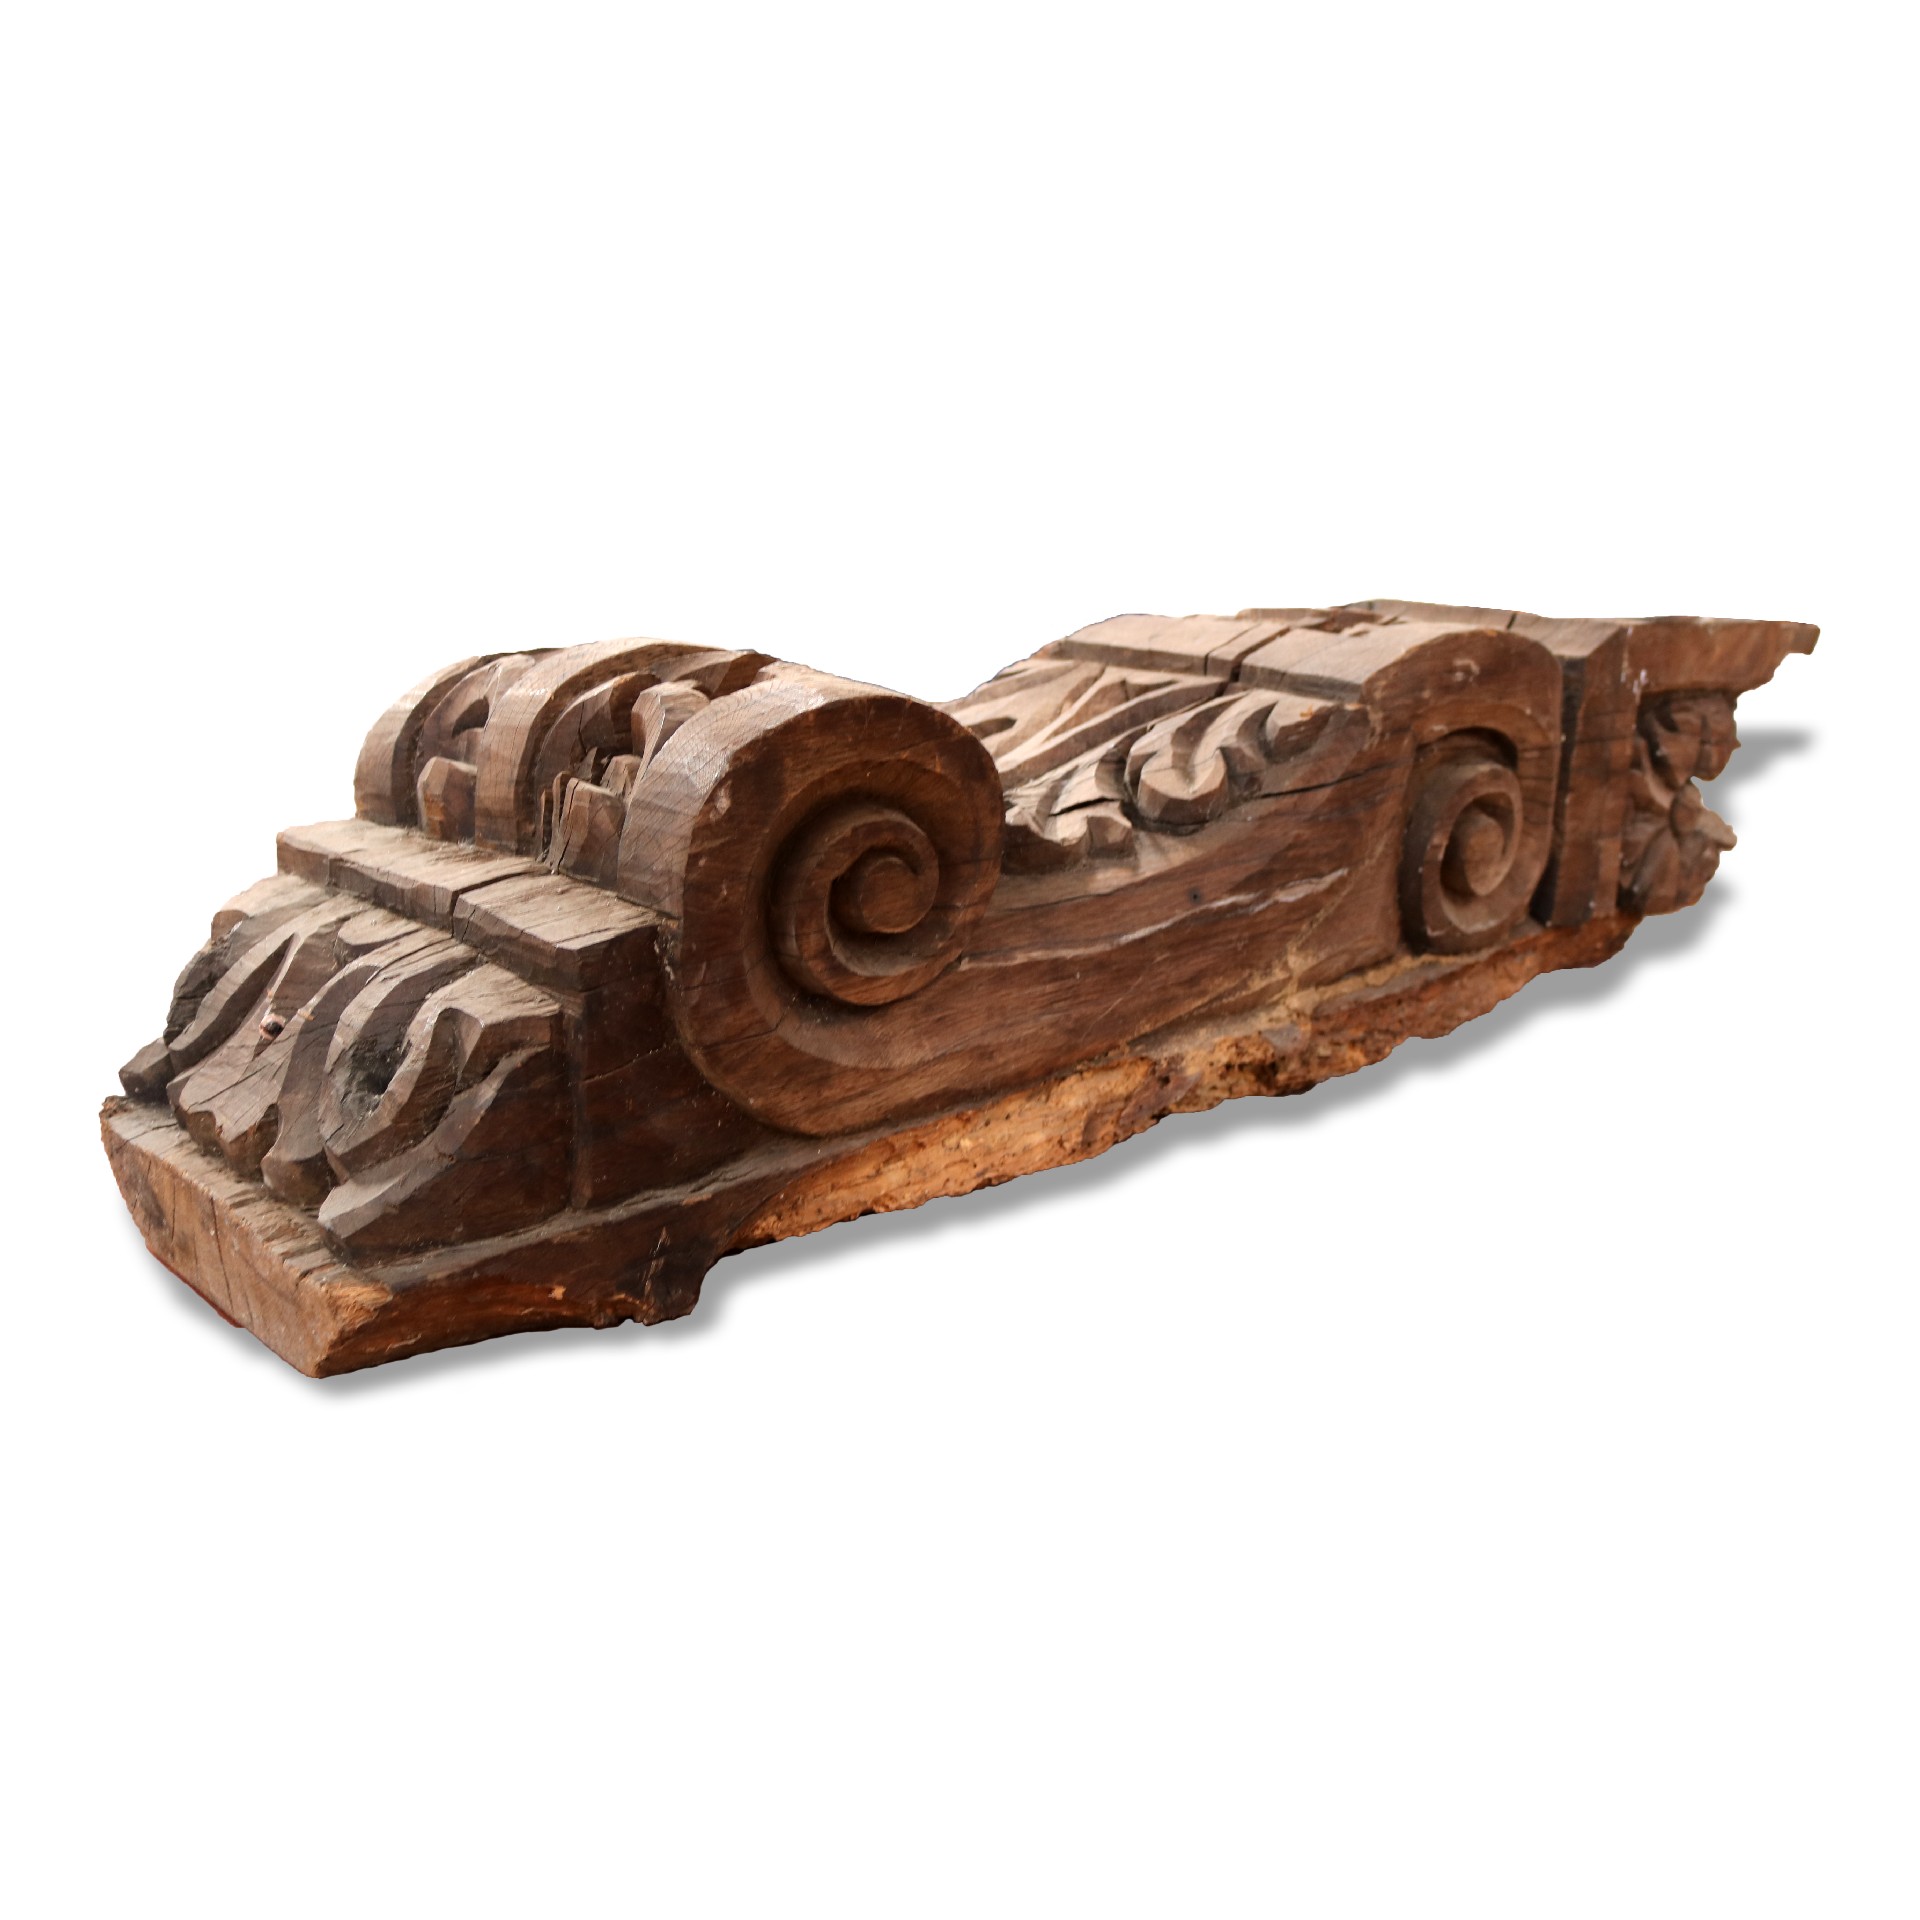 Antica mensola in legno. Epoca XIV. - Mensole antiche - Architettura - Prodotti - Antichità Fiorillo